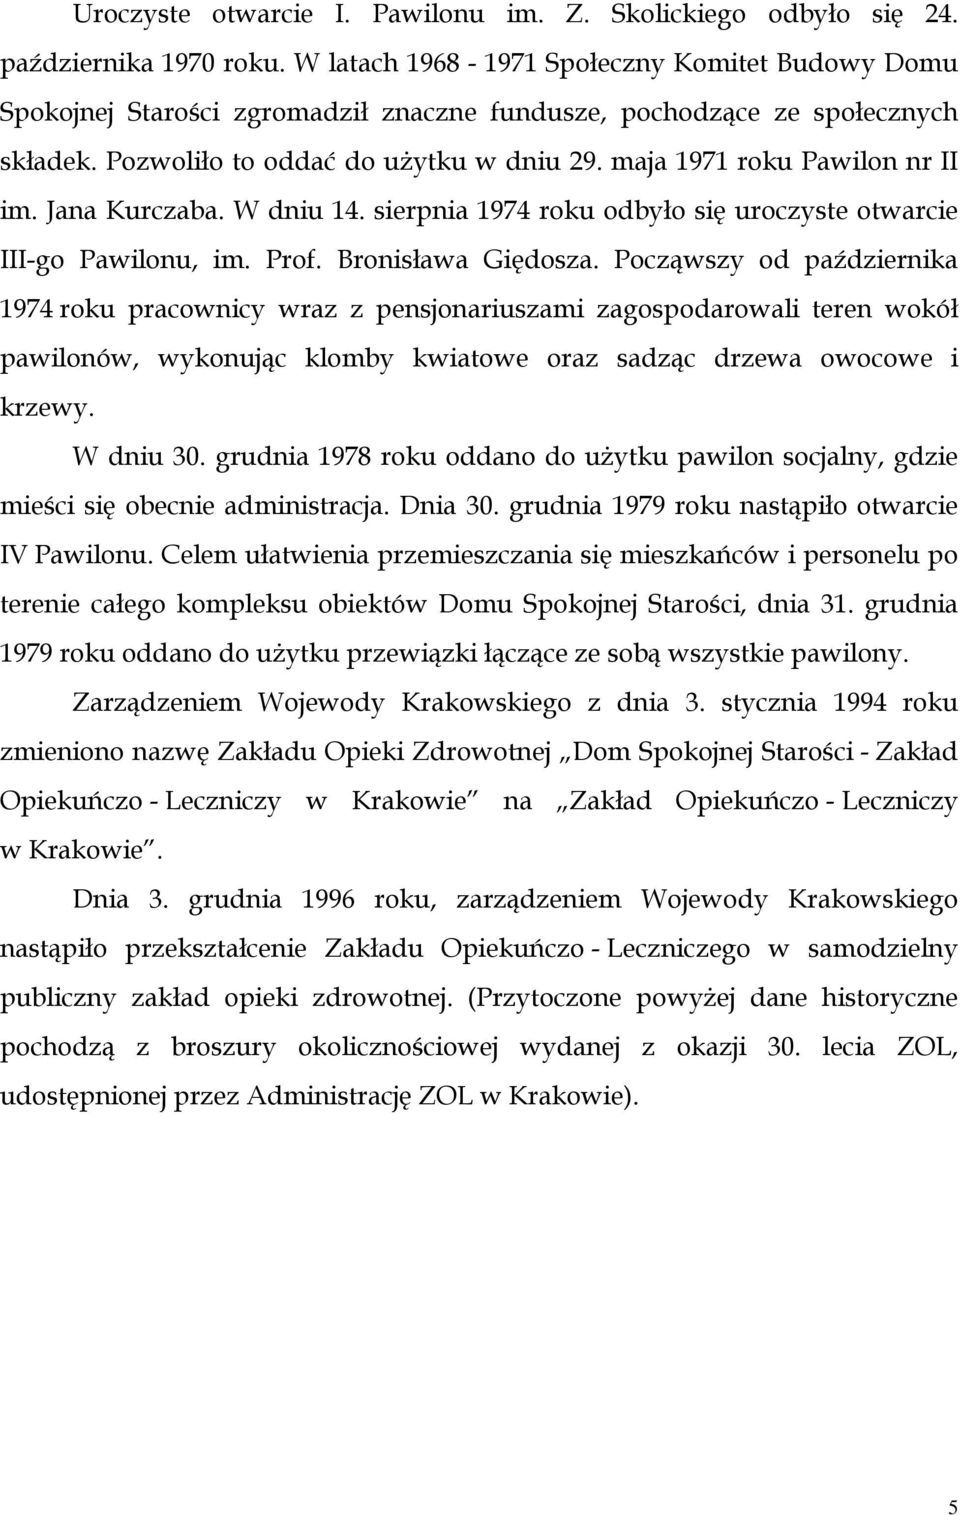 maja 1971 roku Pawilon nr II im. Jana Kurczaba. W dniu 14. sierpnia 1974 roku odbyło się uroczyste otwarcie III-go Pawilonu, im. Prof. Bronisława Giędosza.